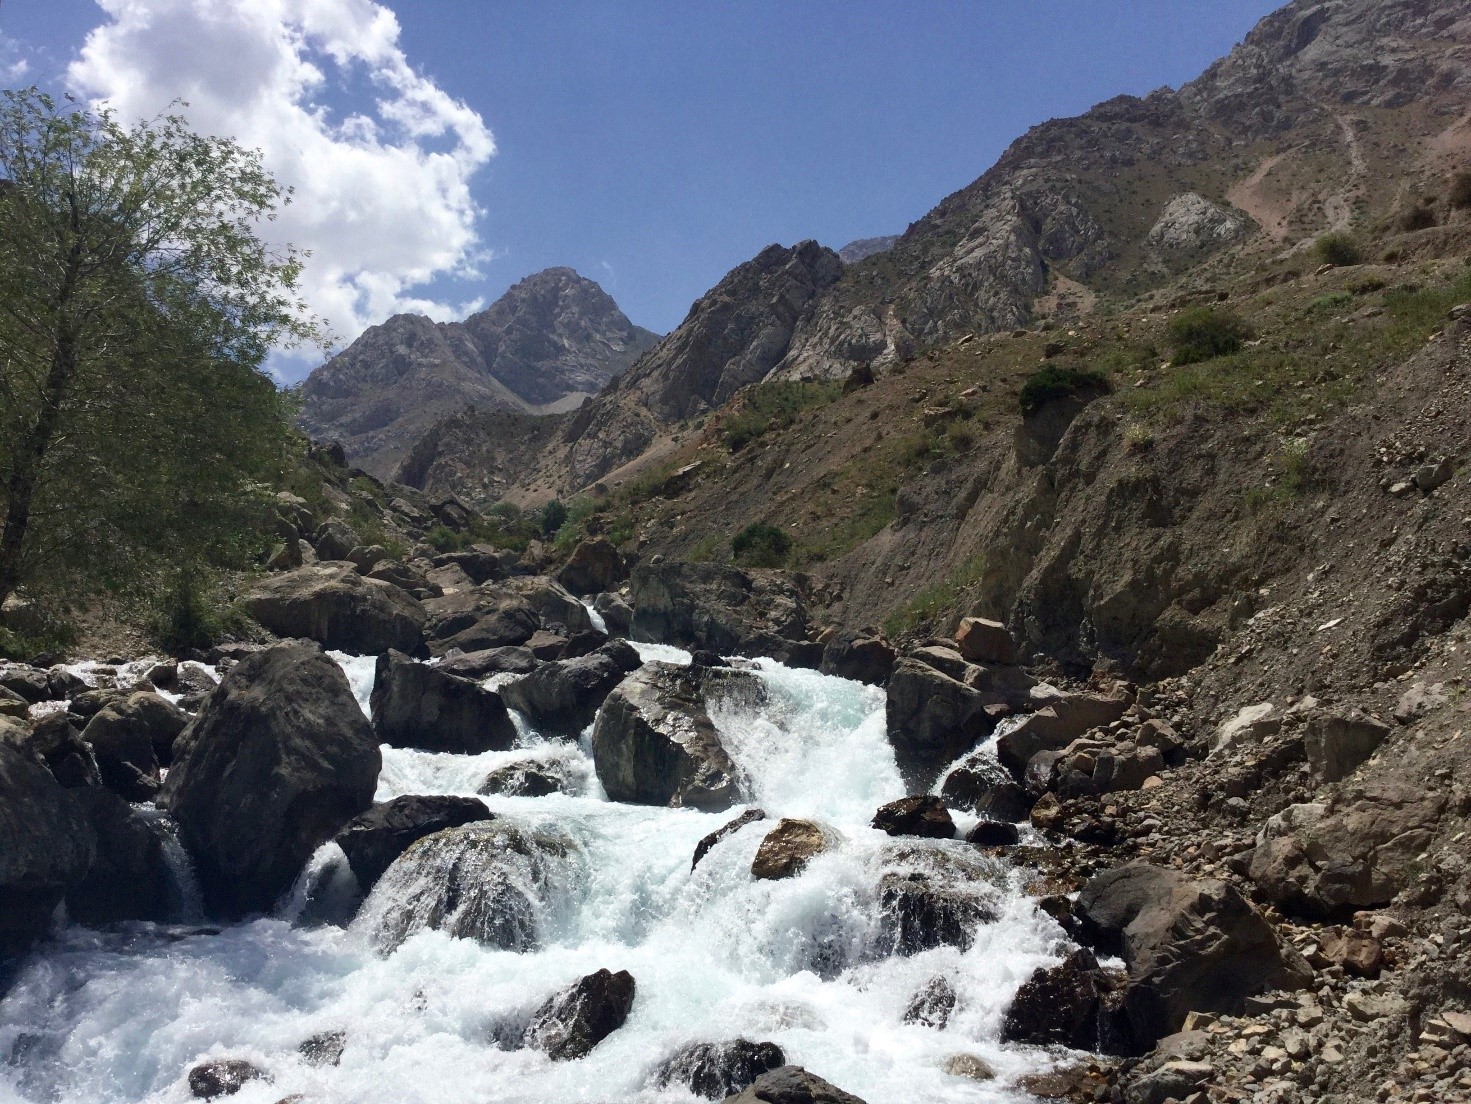 Www China Ten Girl Hd Download Xxxx Video Com - Water in Tajikistan, abundant yet challenging - ACTED